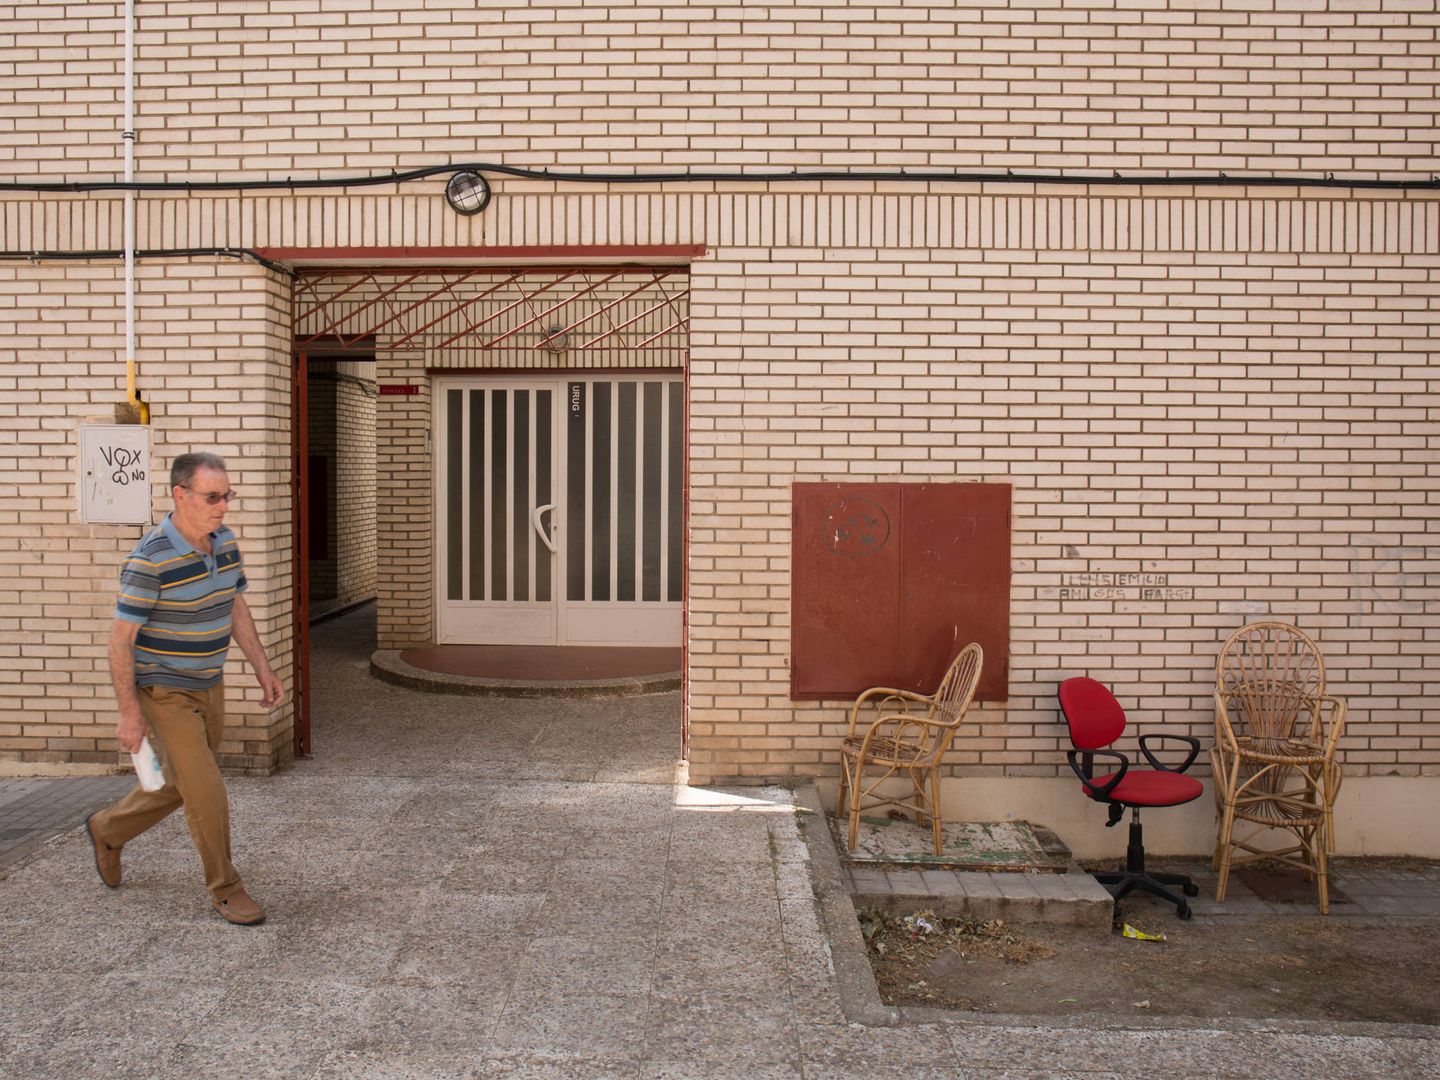 Un vecino pasa frente a la entrada de un bloque de viviendas en La Granja, Ciudad Real.